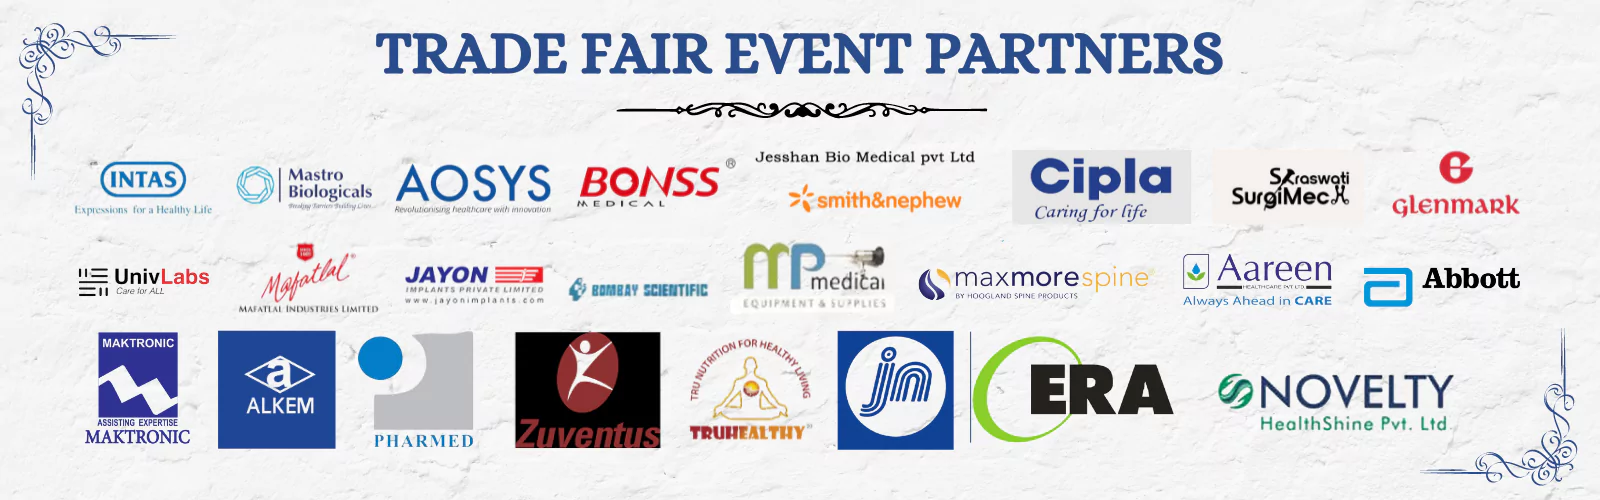 Trade Fair Event Partners